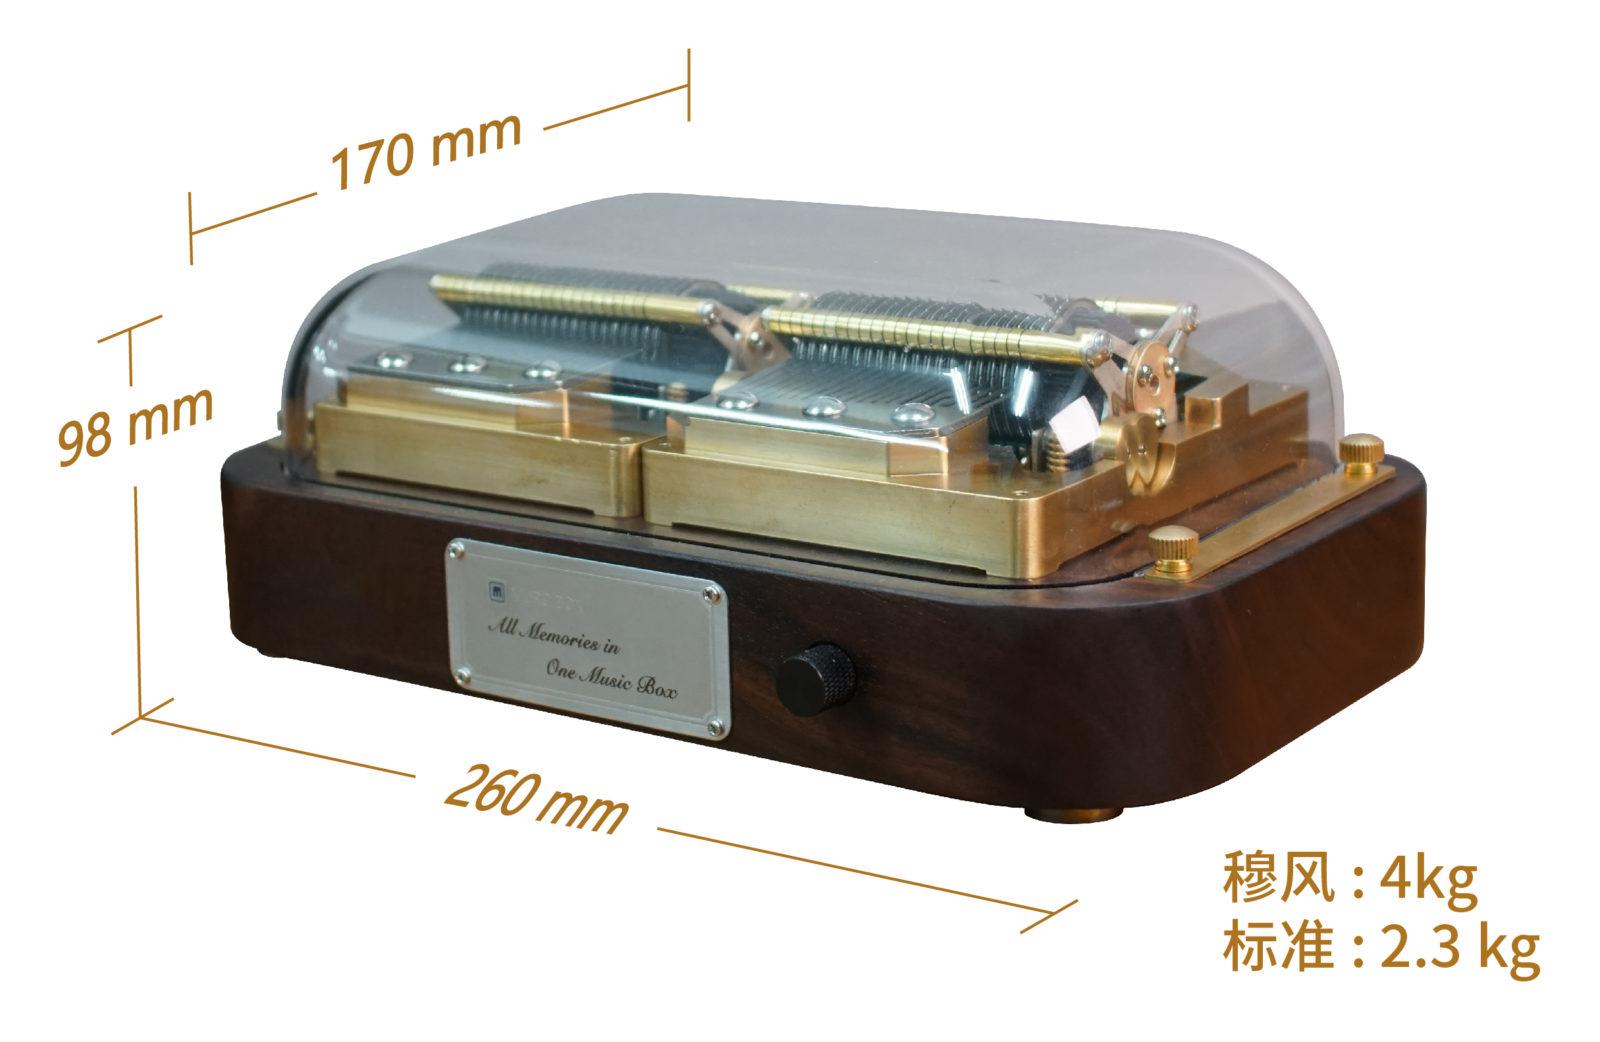 Muro Box-N40 尺寸为 260 mm 长 x 170 mm 宽 x 98 mm 高 ，穆风 重 4 公斤，标准版重 2.3 公斤，两款皆份量十足。